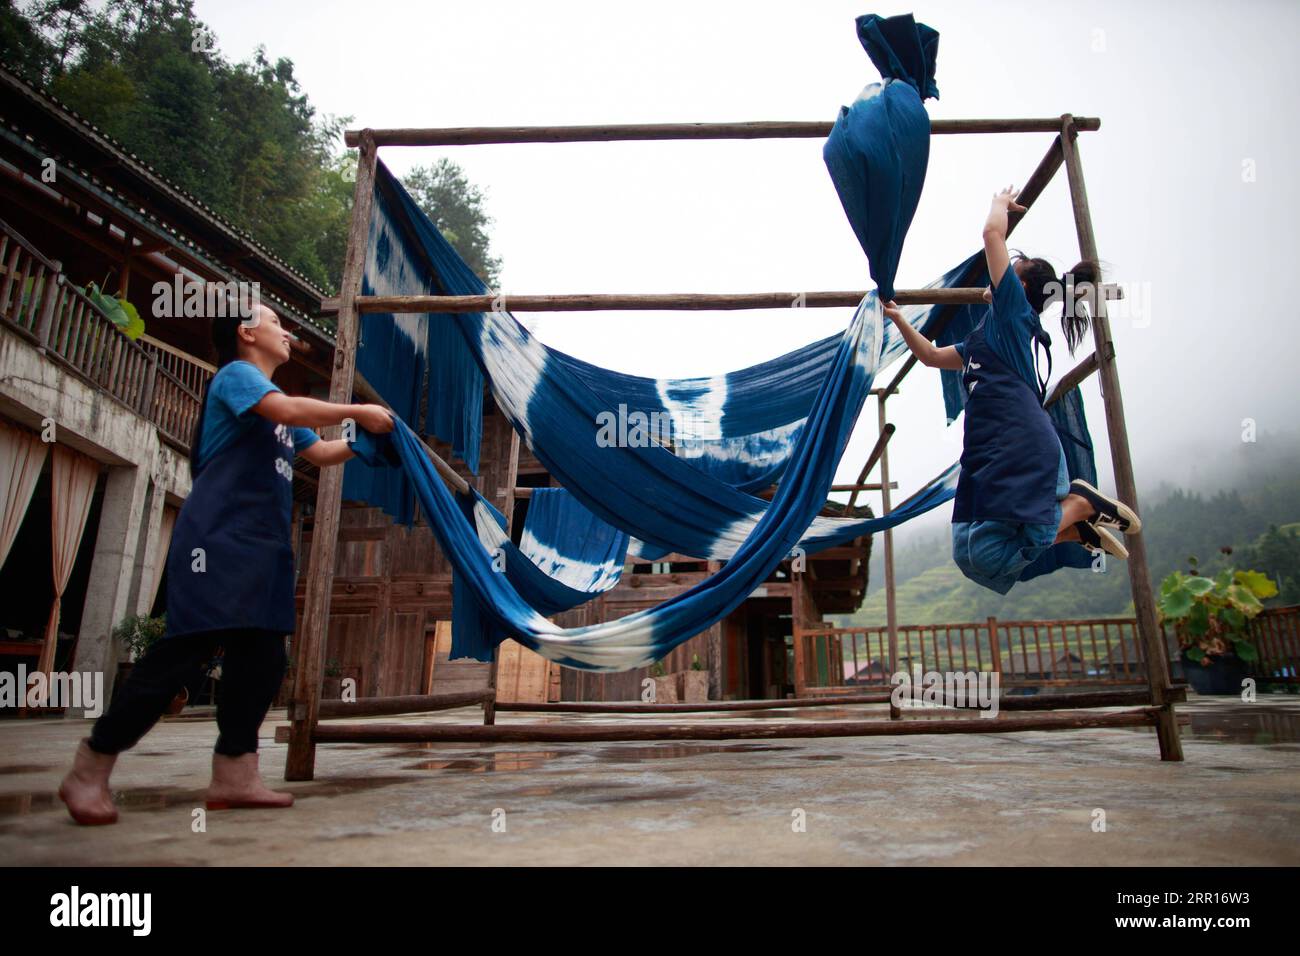 200907 -- RONGJIANG, le 7 septembre 2020 -- deux femmes ont séché du tissu dans un atelier dans le village de Fengdeng Dong, dans le comté de Rongjiang, dans la province du Guizhou, au sud-ouest de la Chine, le 6 septembre 2020. Les habitants profitent des conditions météorologiques d'automne favorables pour faire le tissu traditionnel du groupe ethnique Dong. CHINA-GUIZHOU-DONG VILLAGE-TISSU FAISANT CN LIUXXU PUBLICATIONXNOTXINXCHN Banque D'Images